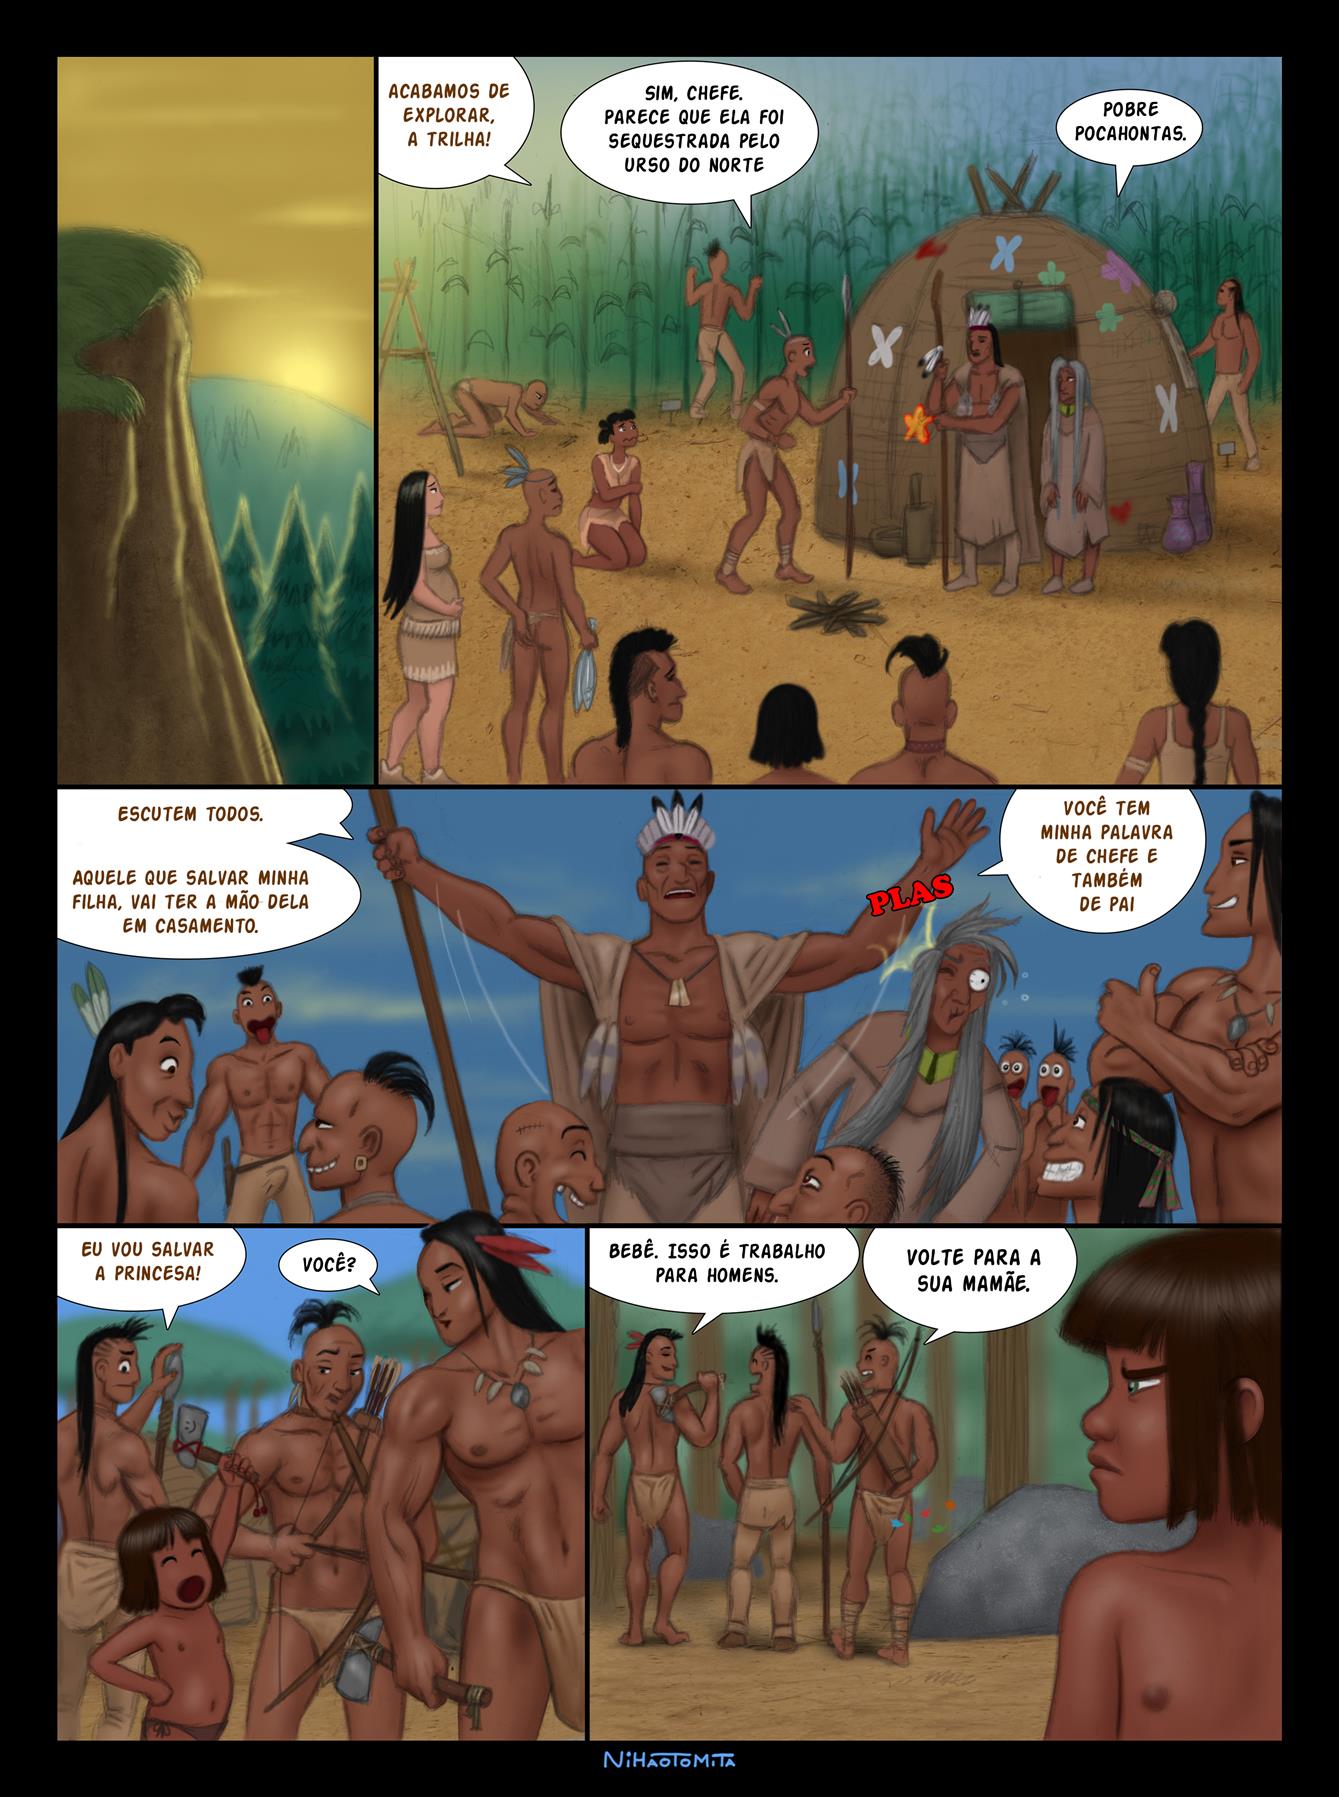 Pocahontas: Coisas da natureza